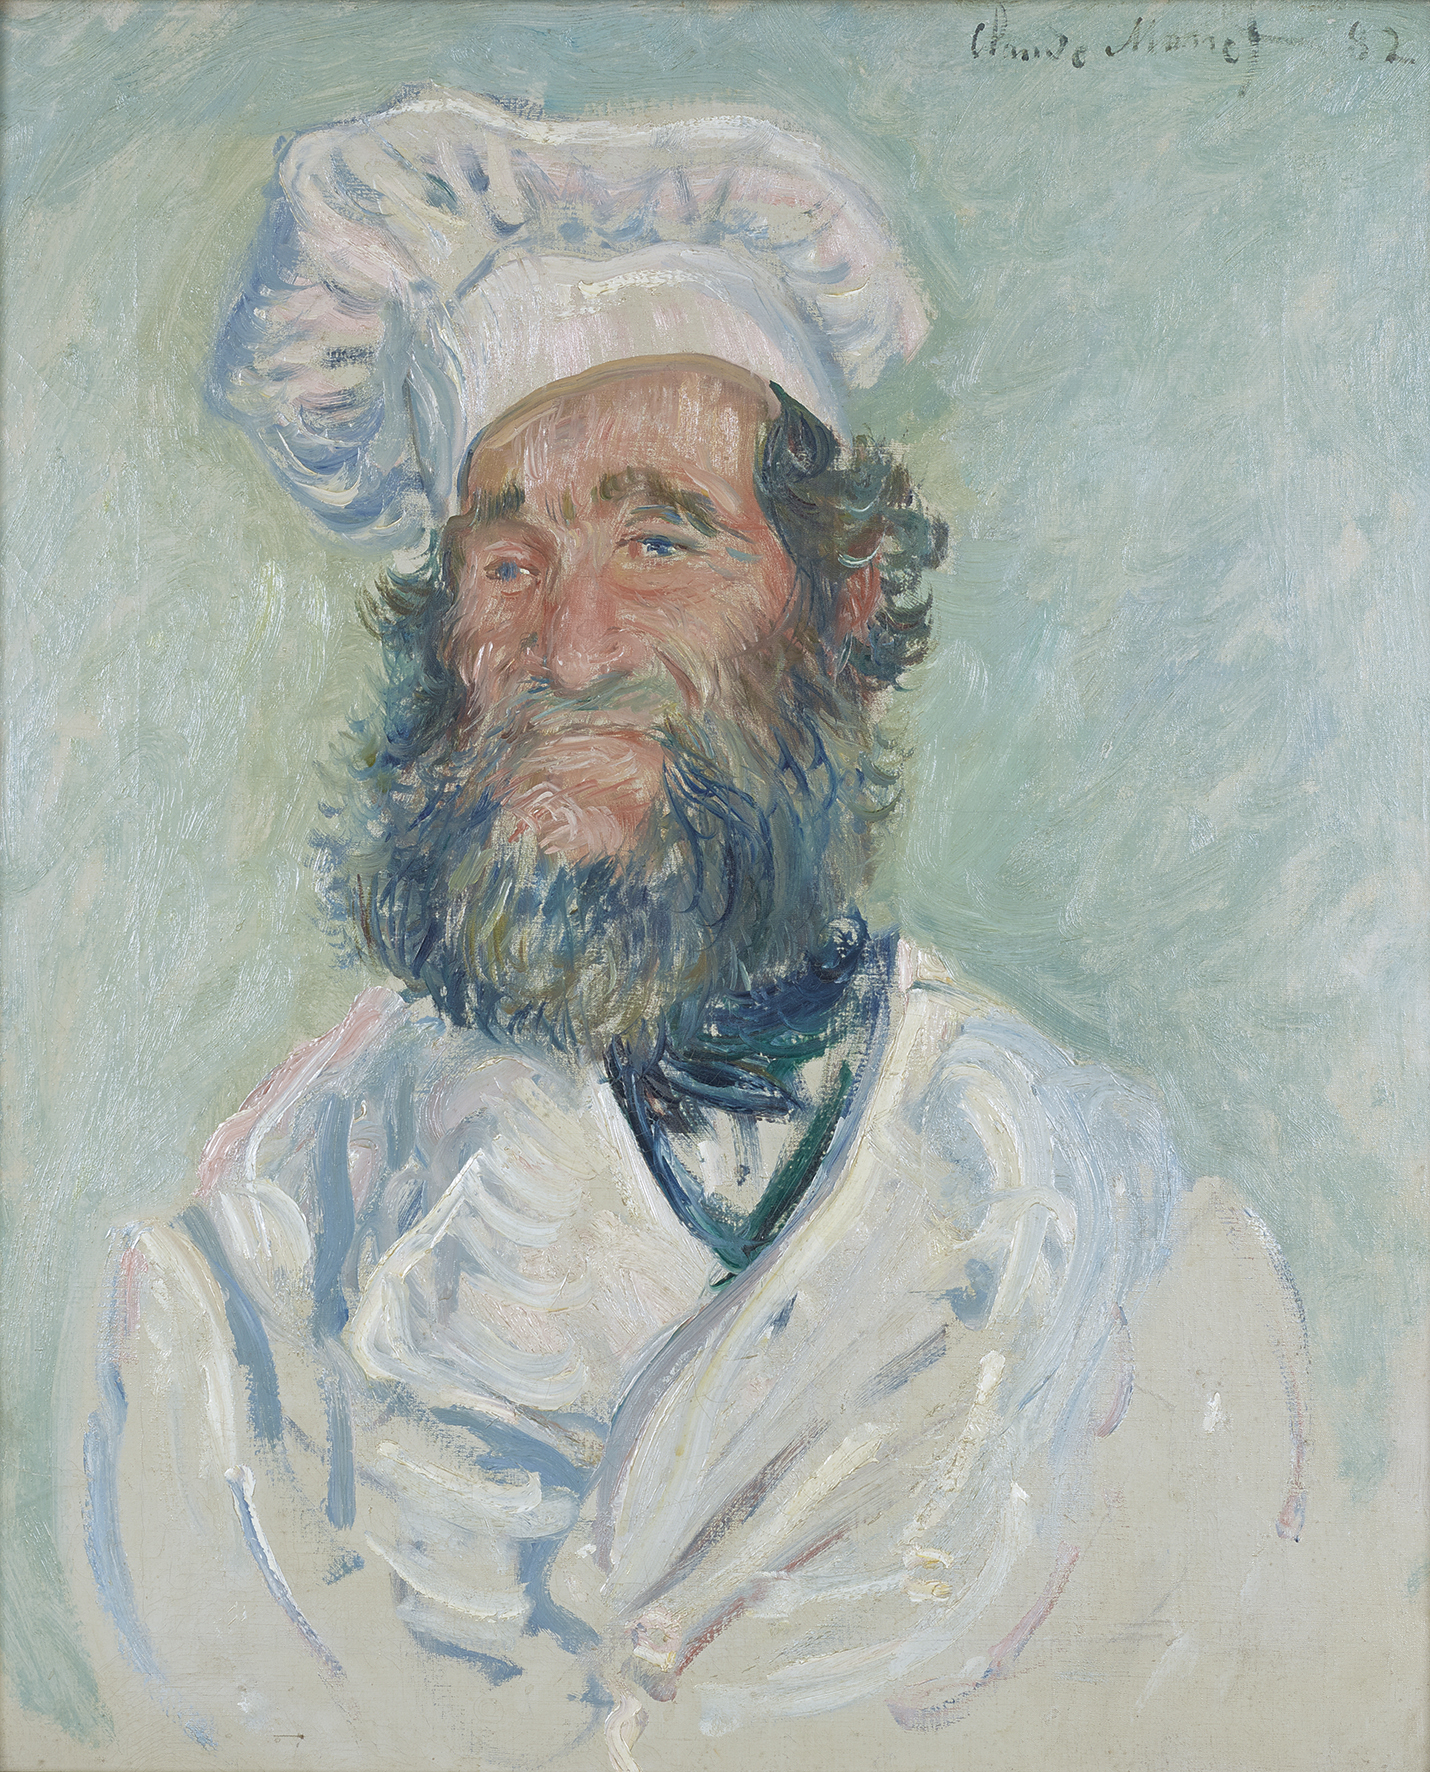 Портрет оца Пола by Claude Monet - 1882. - 64.5 cm × 52.1 cm 